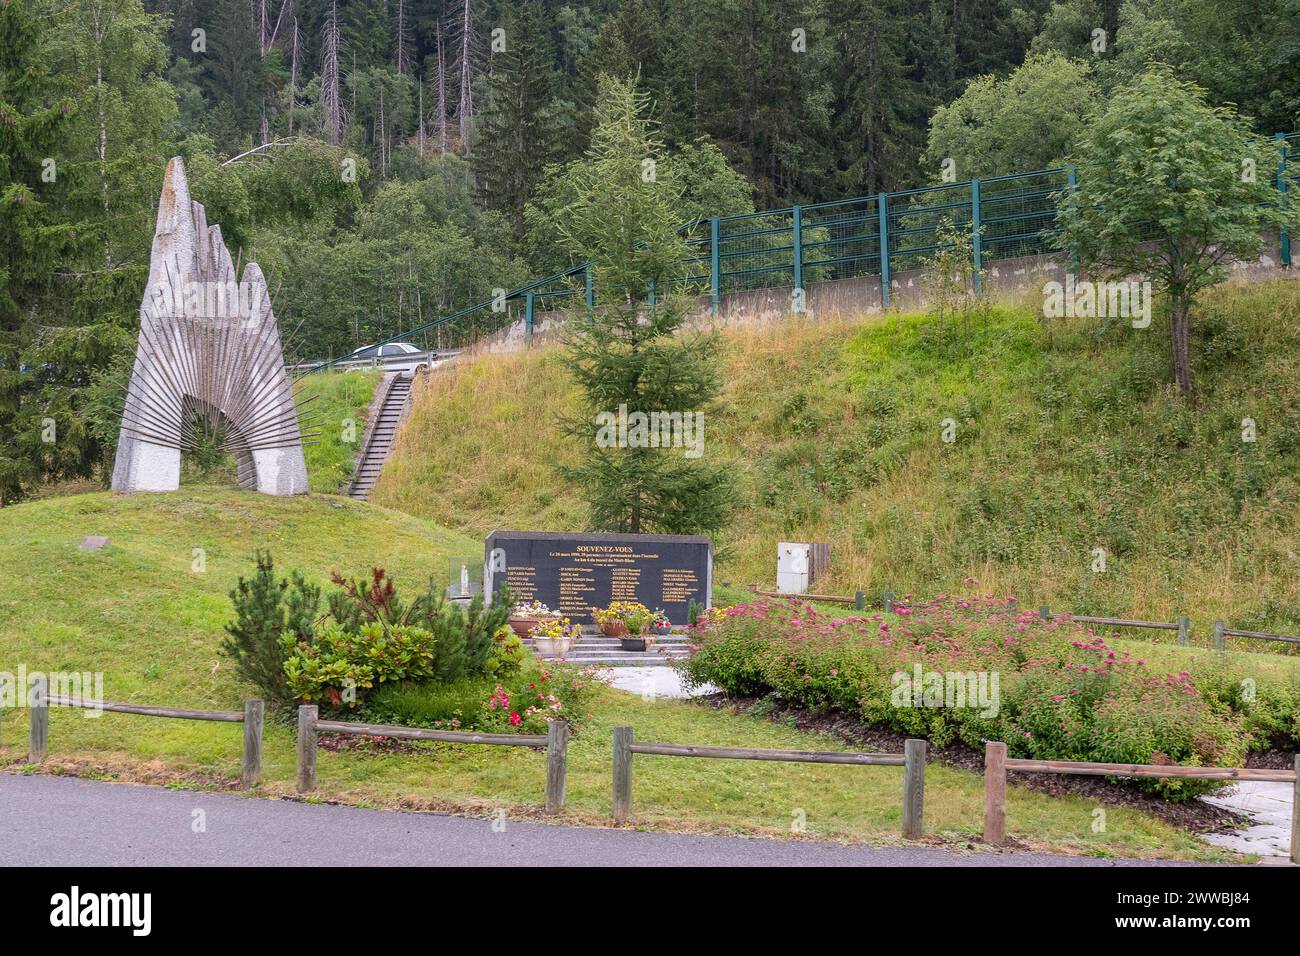 Mémorial aux 39 victimes de l'incendie du tunnel du Mont Blanc (03 24 1999), à côté de la route nationale 205, Chamonix, haute Savoie, France Banque D'Images